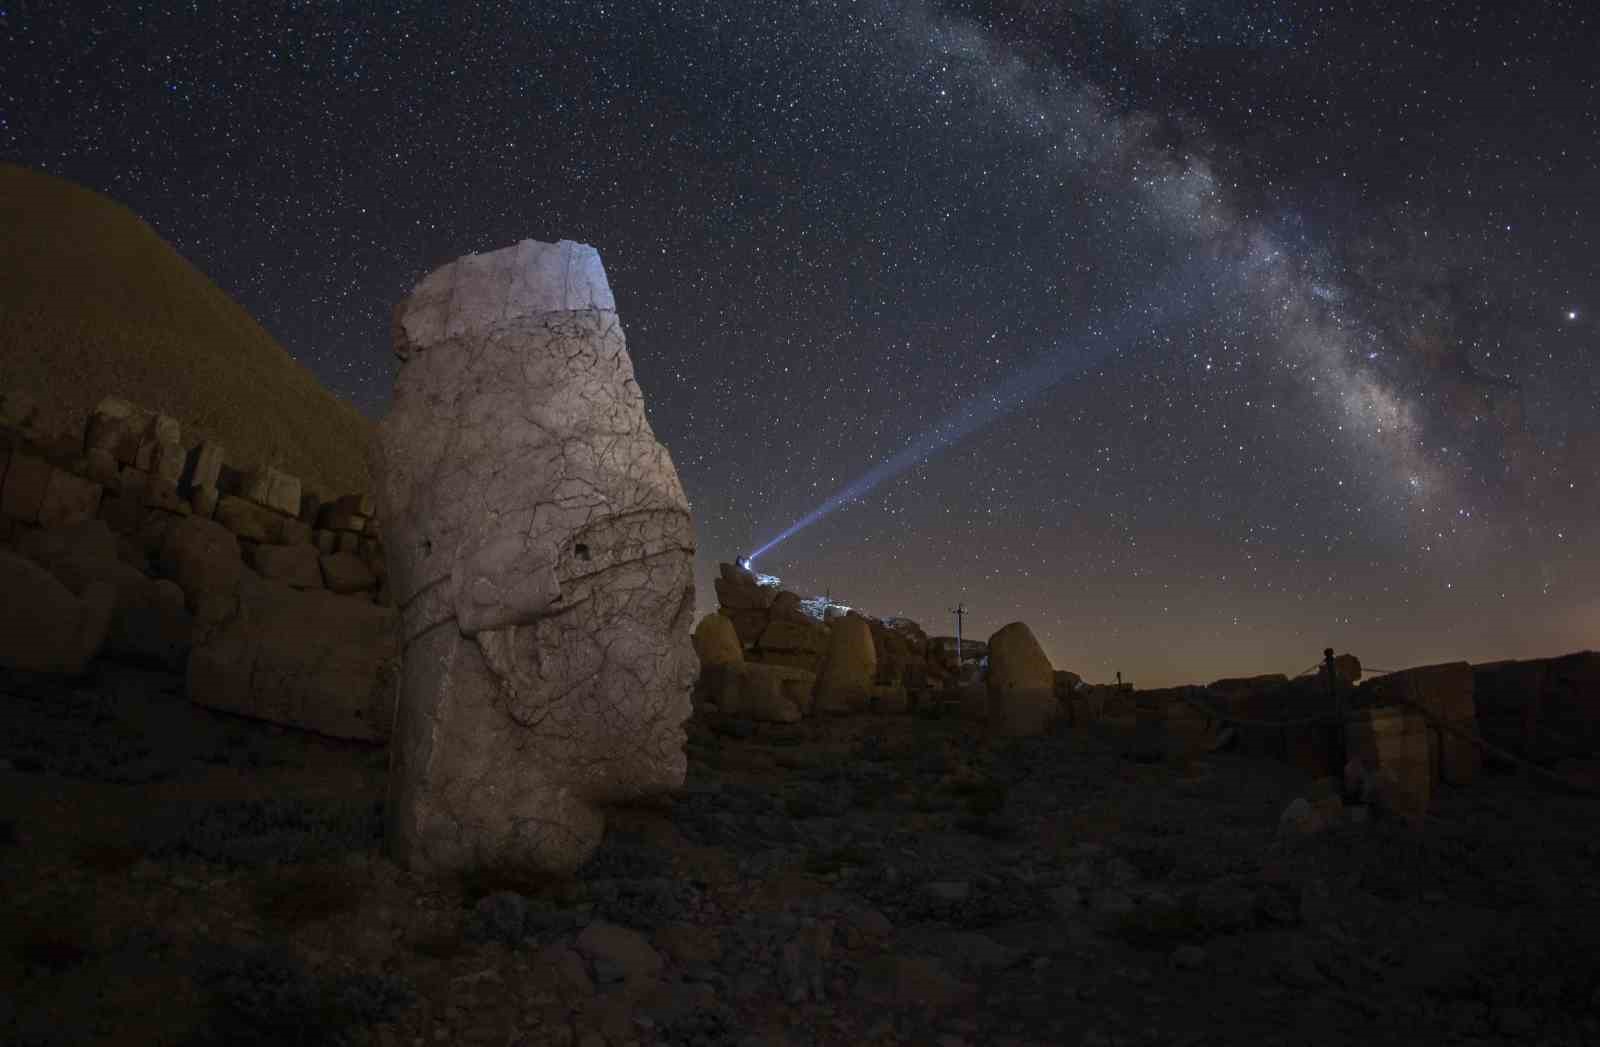 Vanlı gencin çektiği gökyüzü fotoğraflarını ESA paylaştı